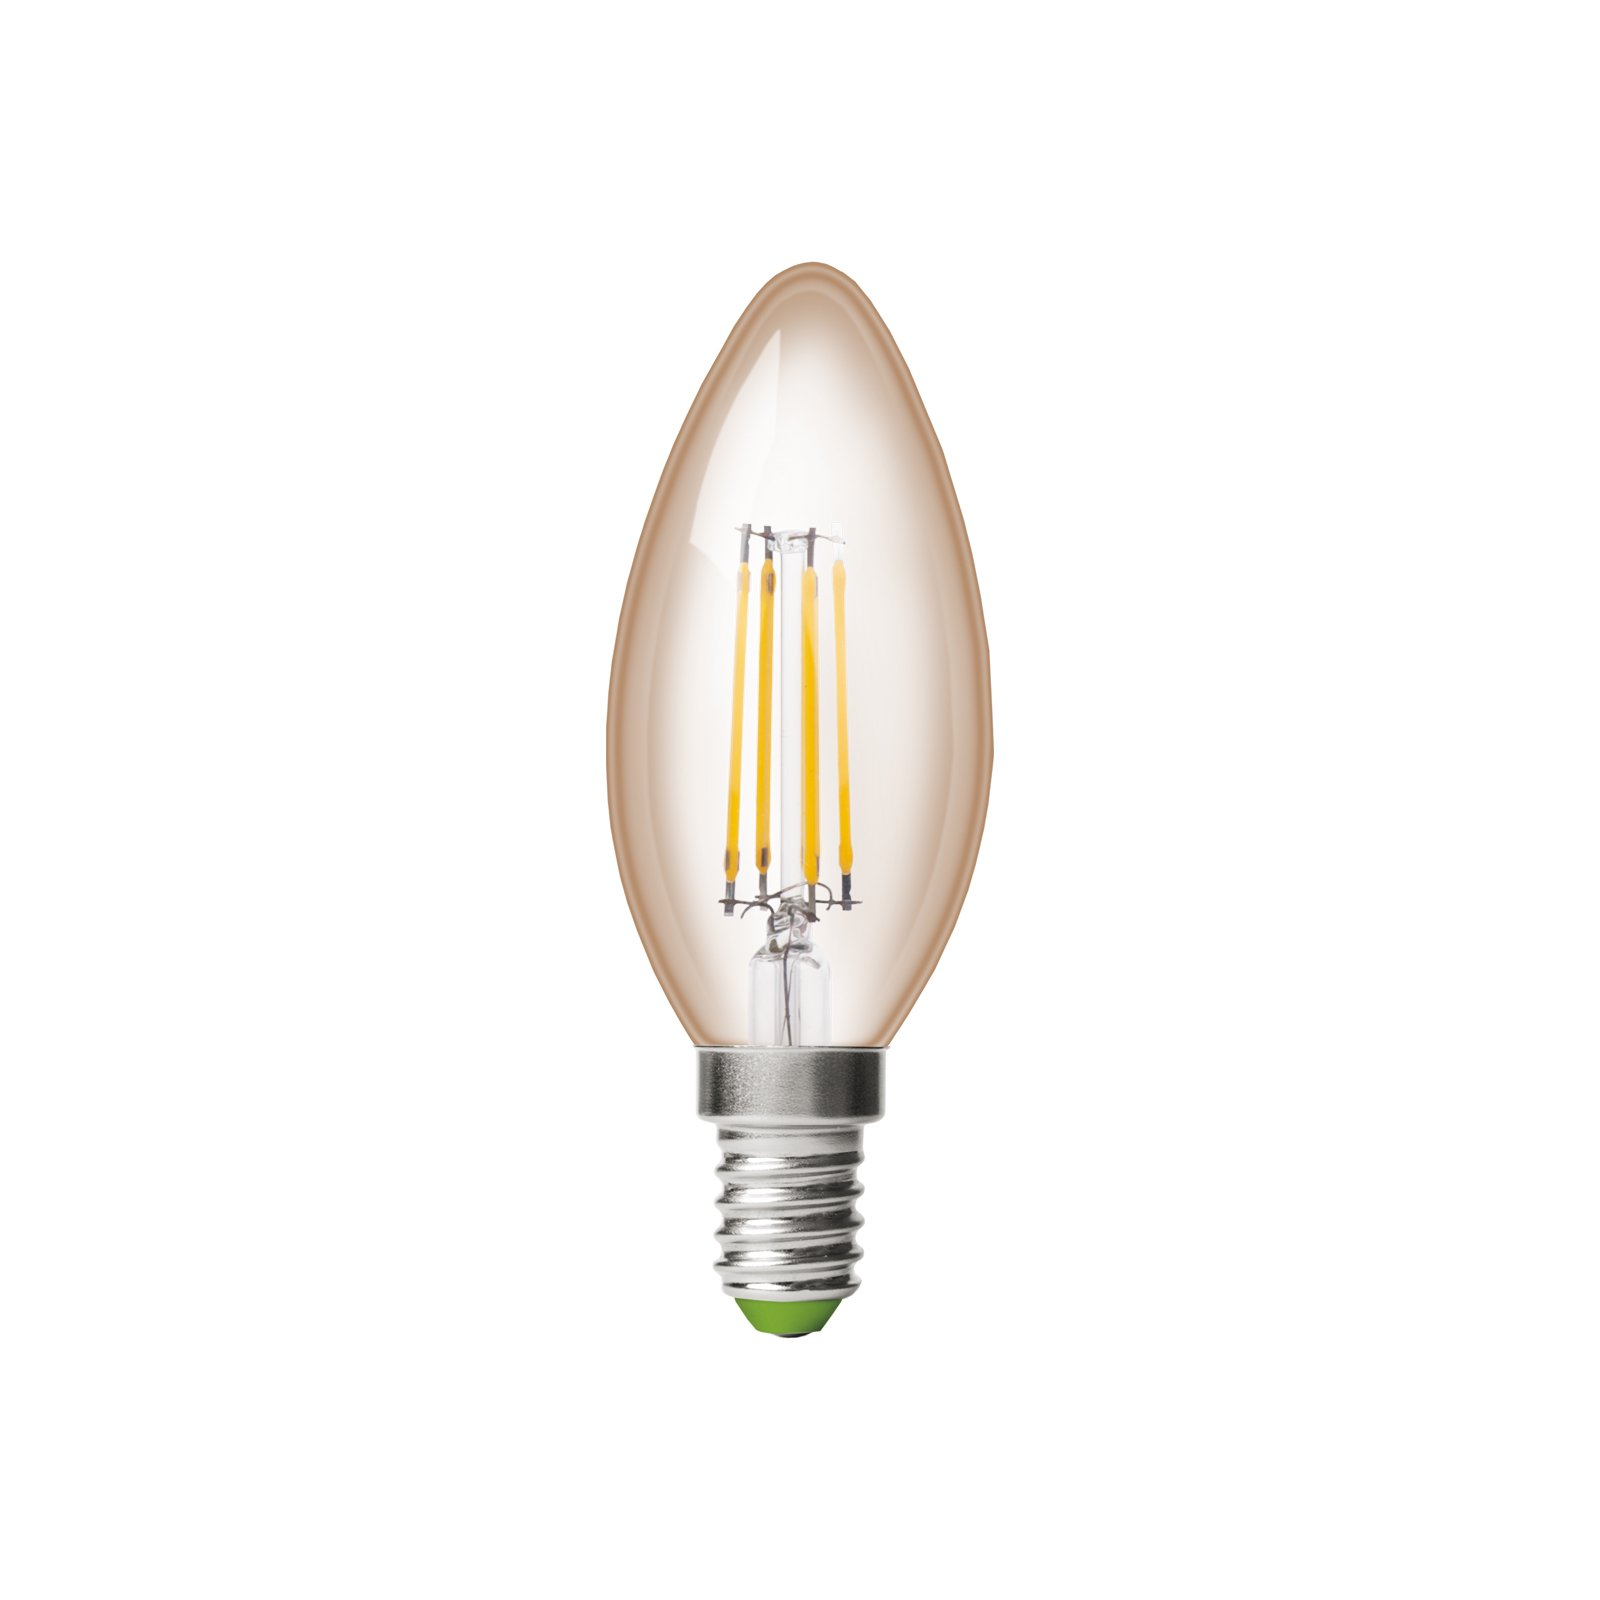 Лампочка Eurolamp LED CL 6W 620 Lm E14 4000K deco 2шт (MLP-LED-CL-06144(Amber)) зображення 2